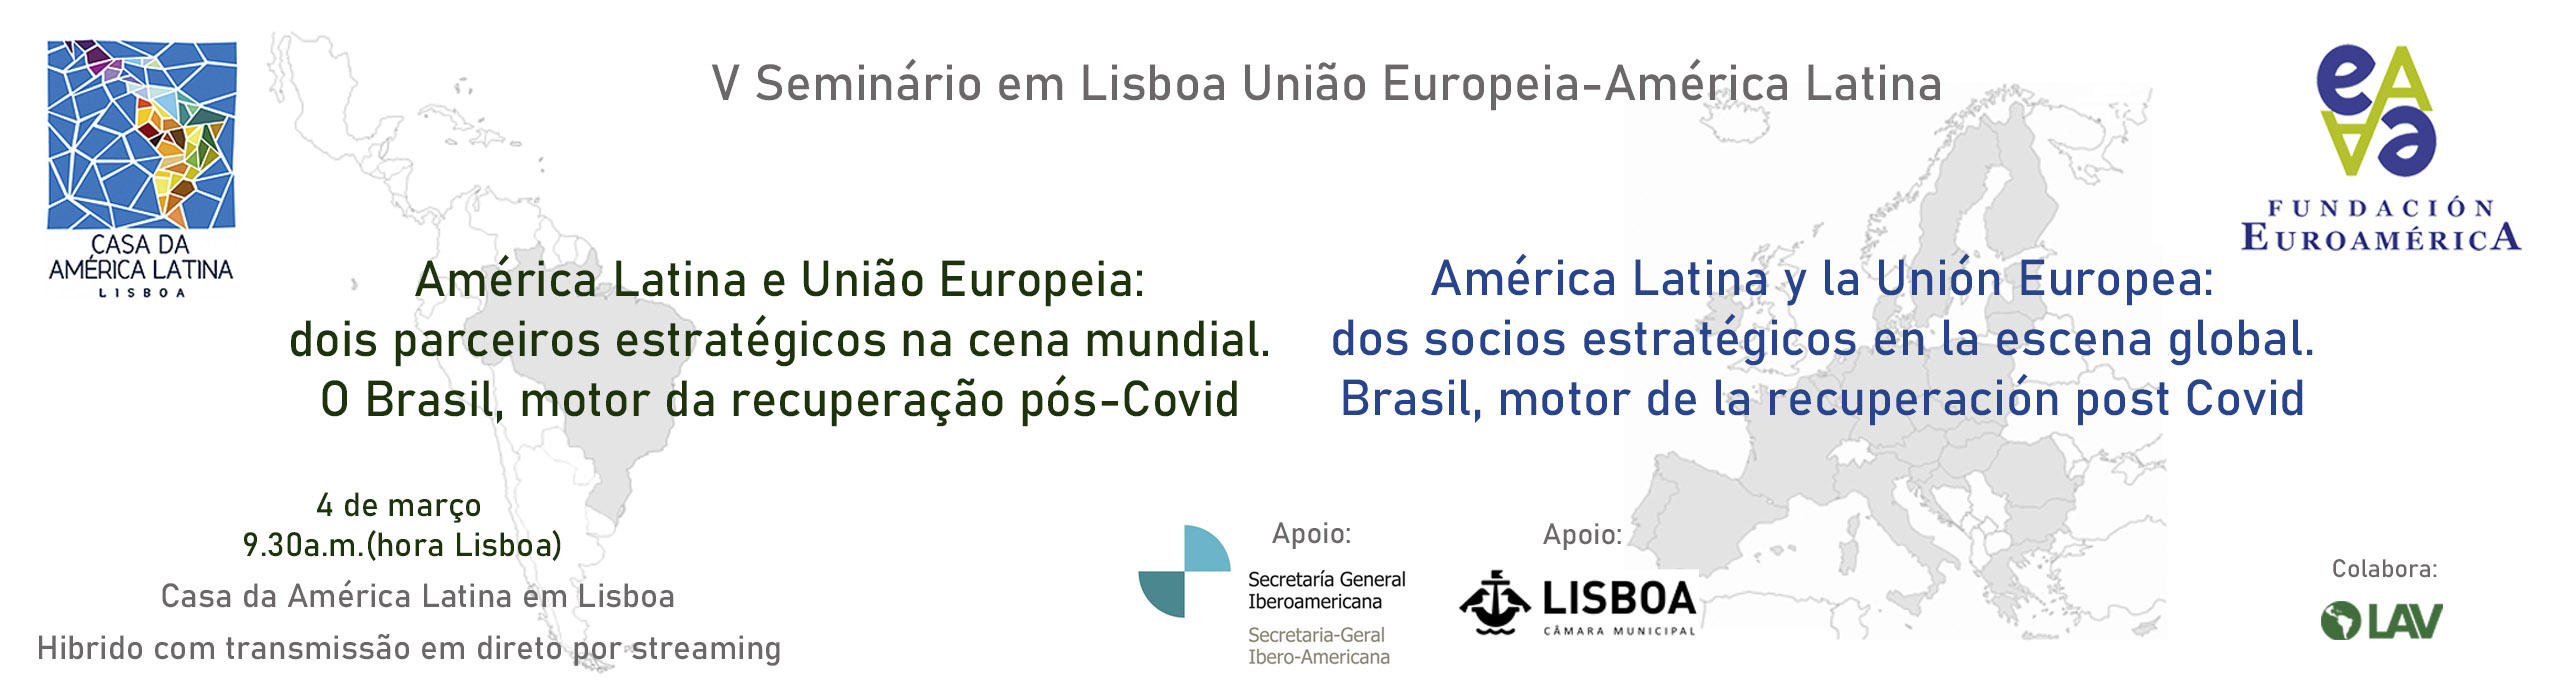 V Seminario en Lisboa UE- América Latina